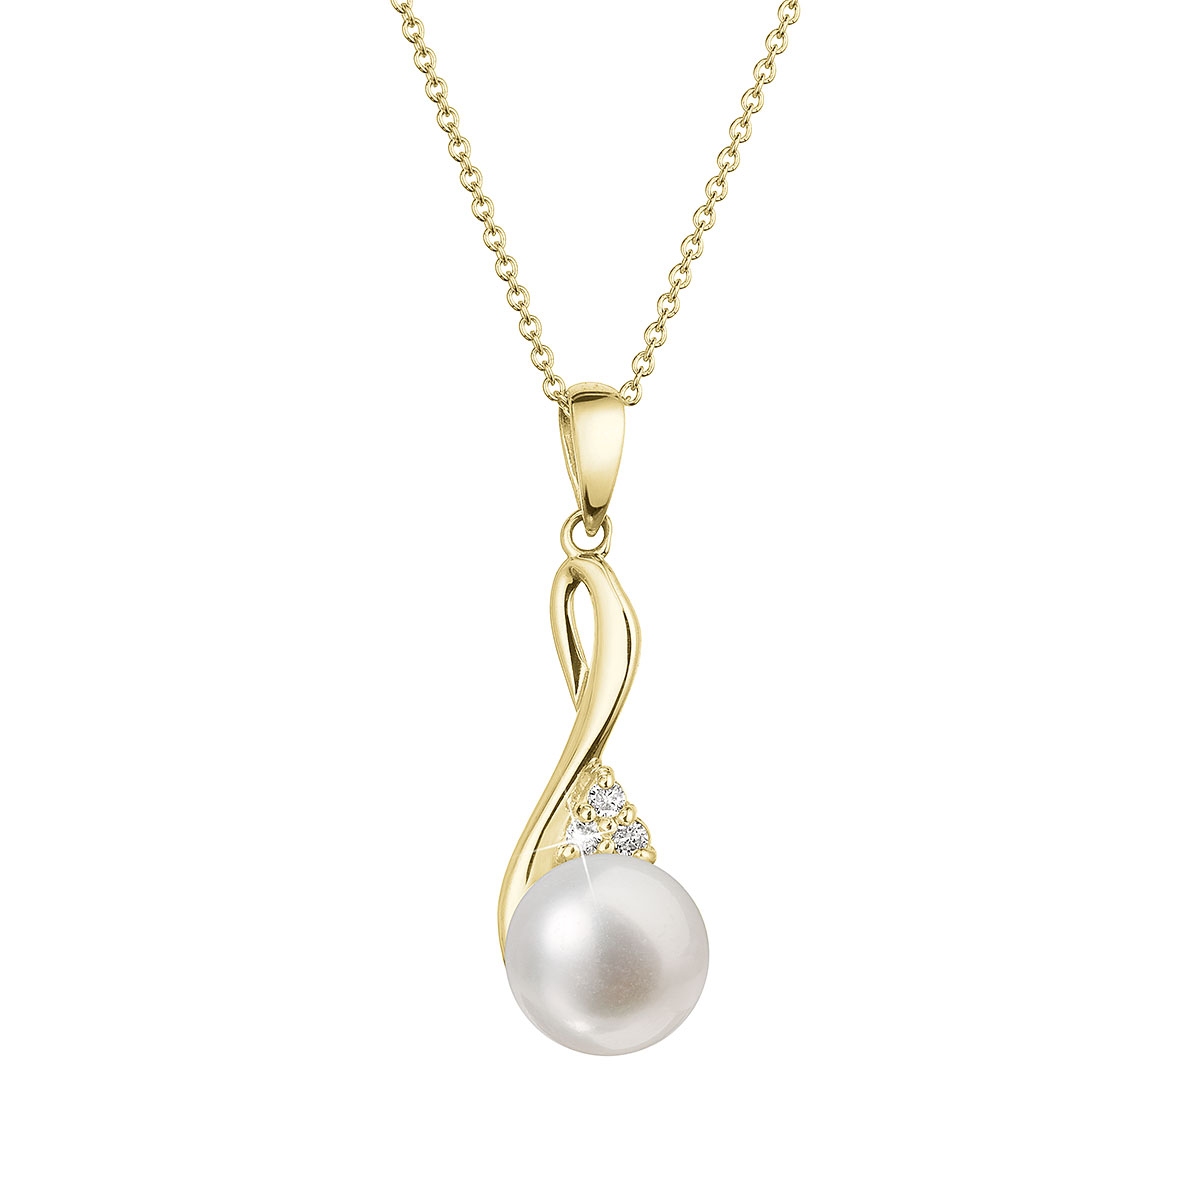 Evolution Group Zlatý 14 karátový náhrdelník s bílou říční perlou a brilianty 92PB00050